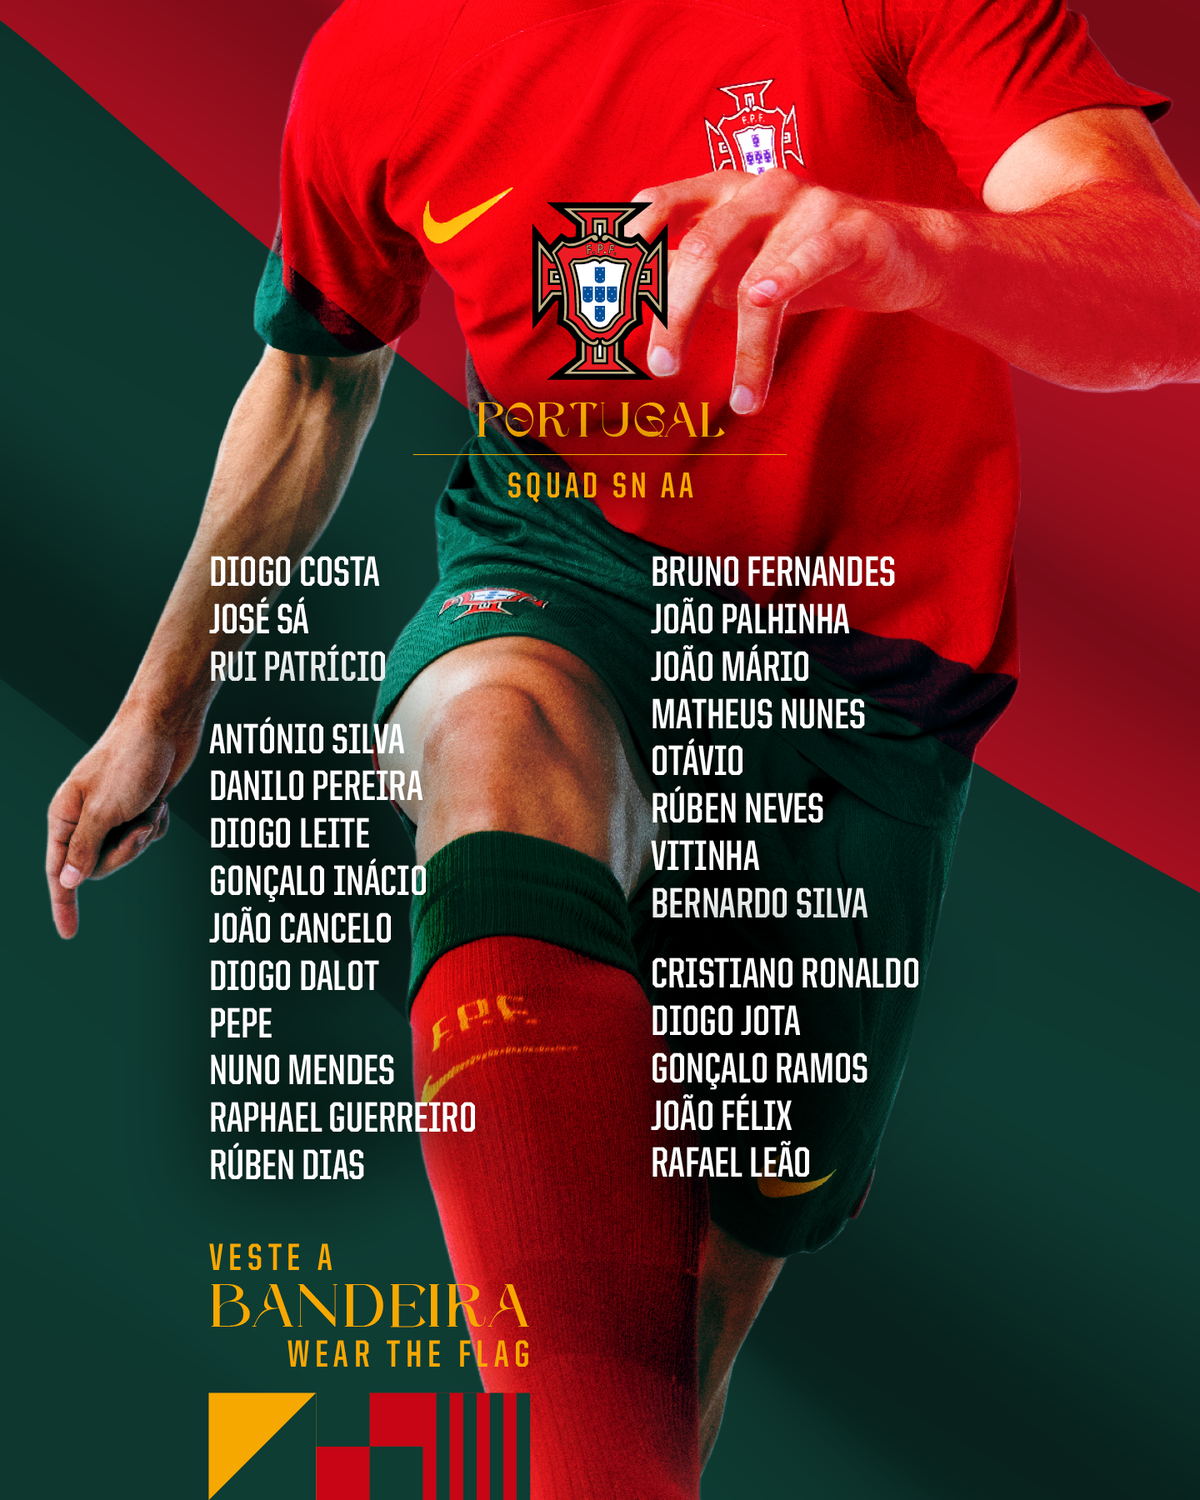 Ronaldo vẫn được trao quyền lực ở tuyển Bồ Đào Nha - Bóng Đá